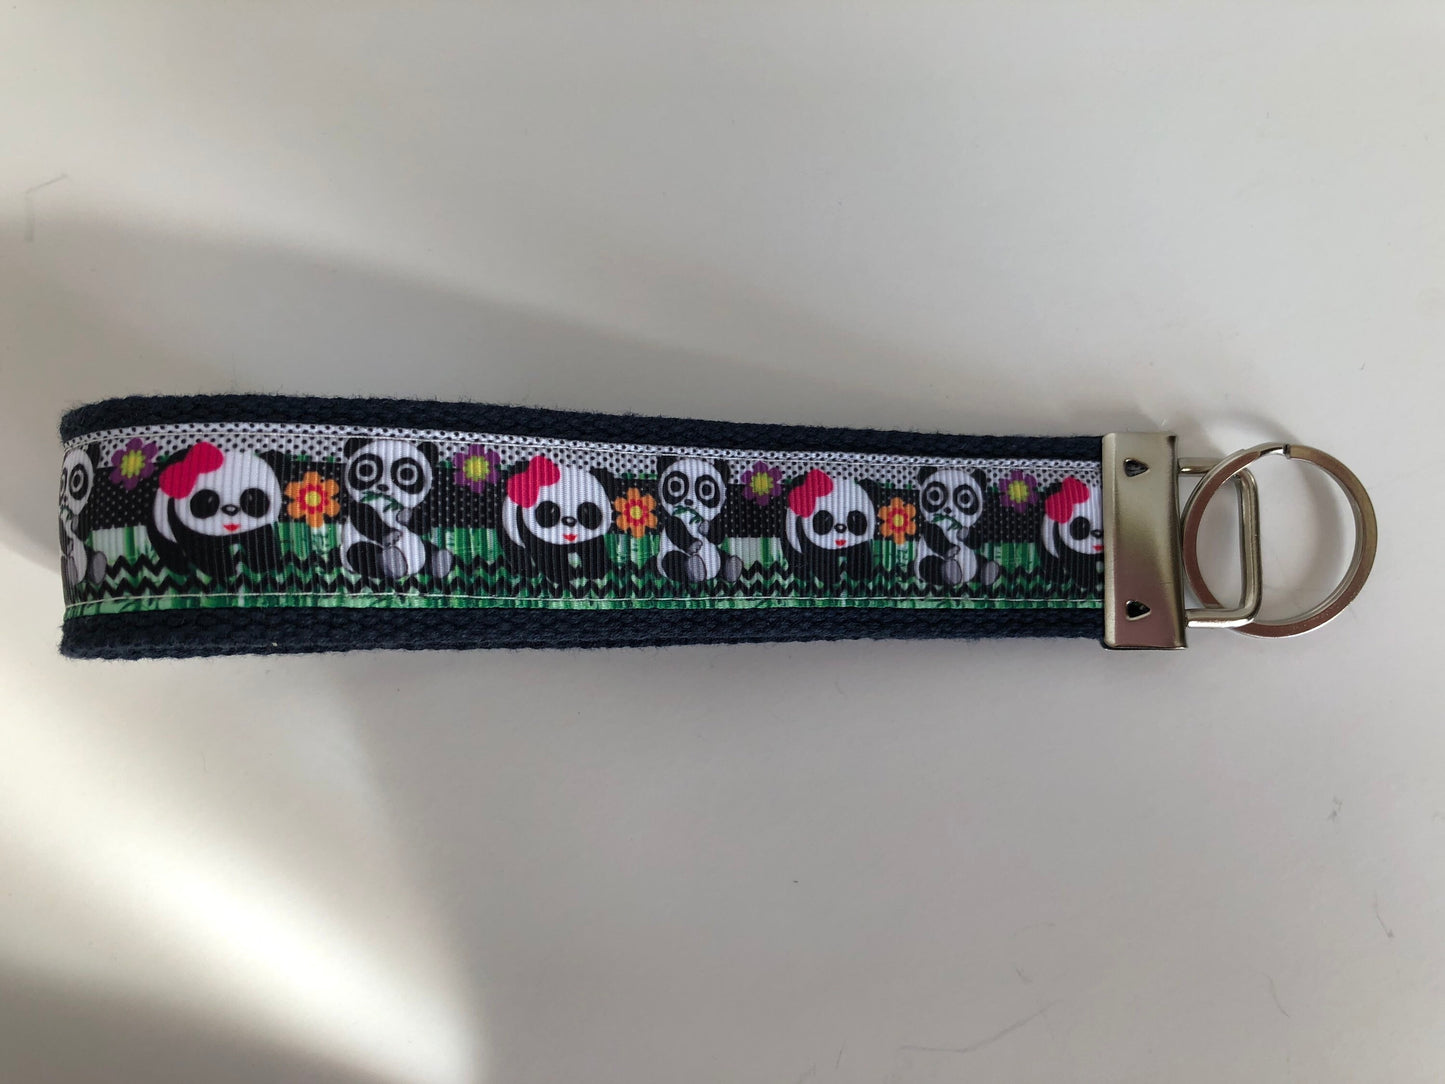 Panda Bear Key Chain, Panda Themed Key Fob